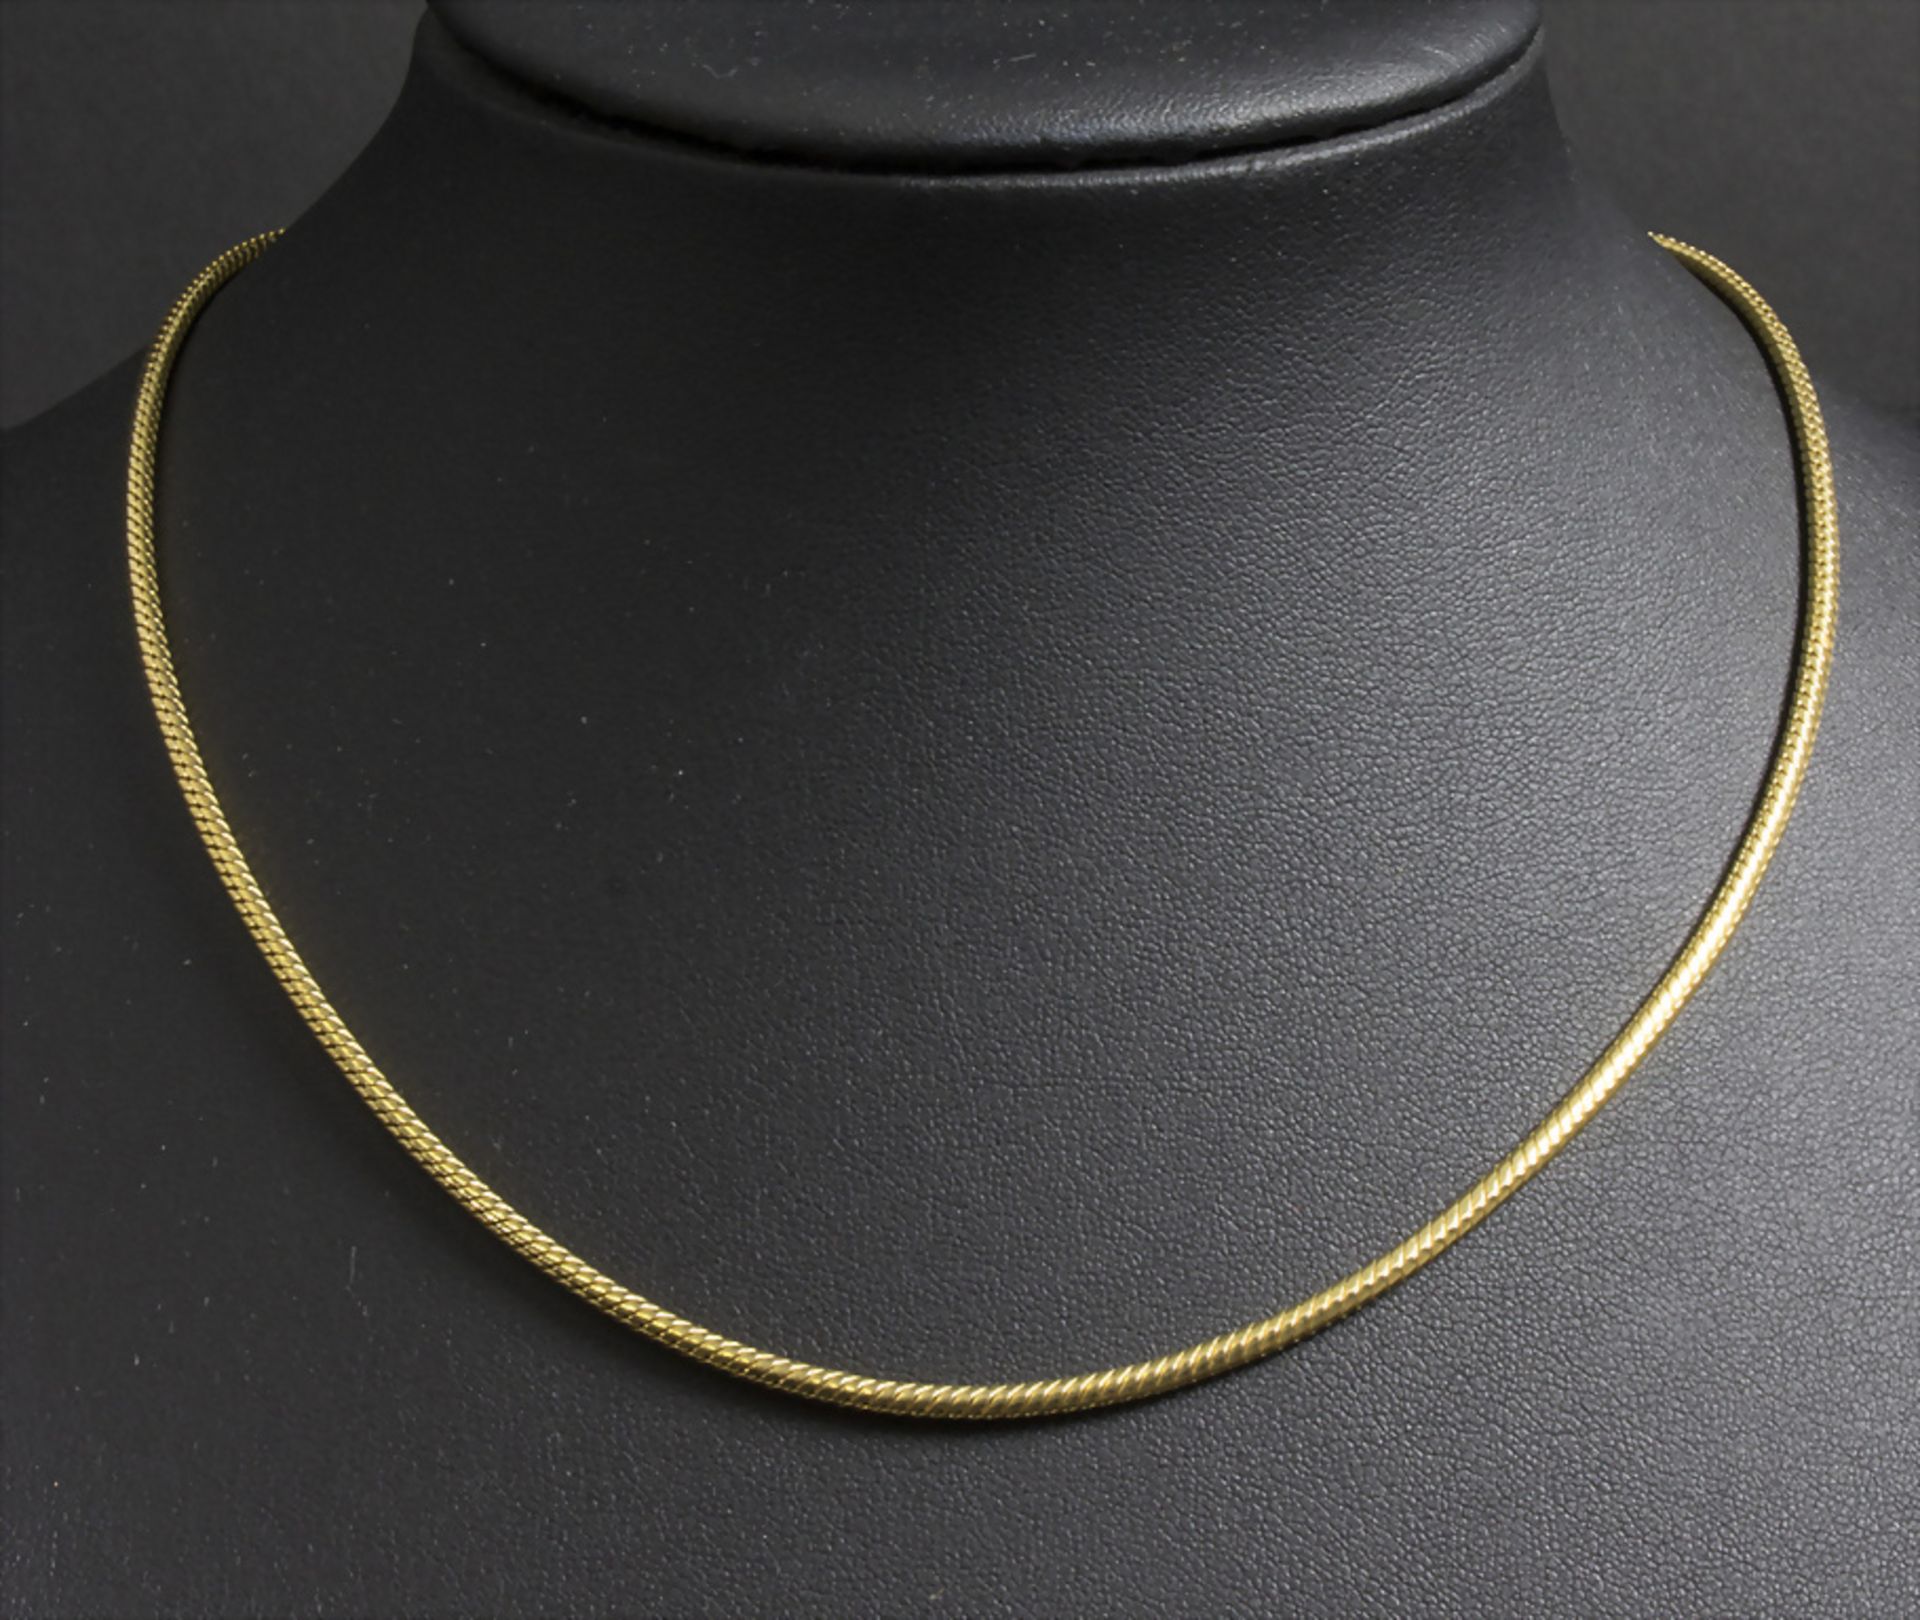 Goldkette / A 14 ct gold necklace